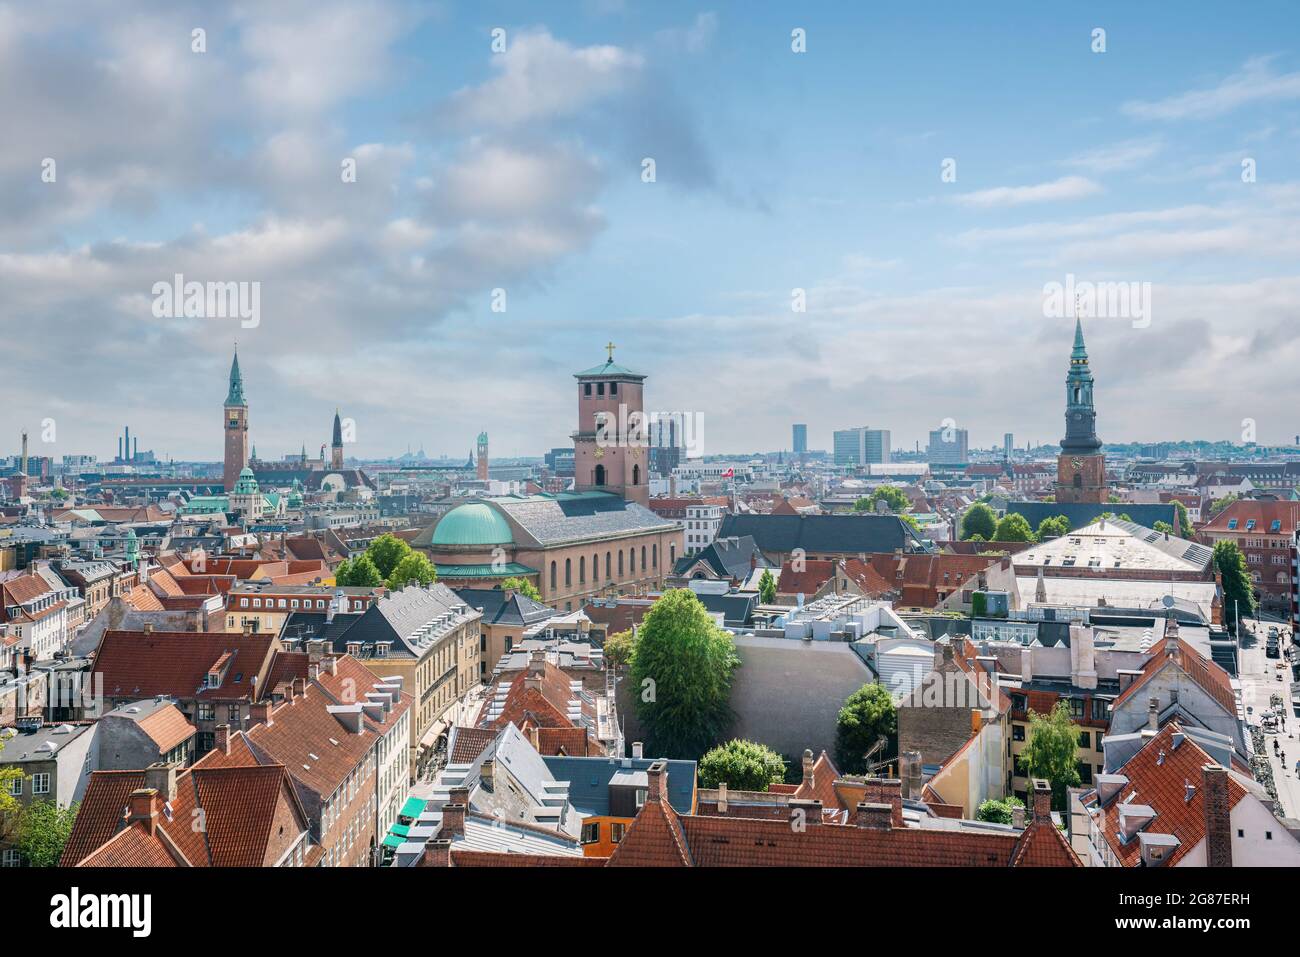 Luftaufnahme der Stadt Kopenhagen mit der Frauenkirche (vor Frue Kirke) und dem Rathausplatz - Kopenhagen, Dänemark Stockfoto